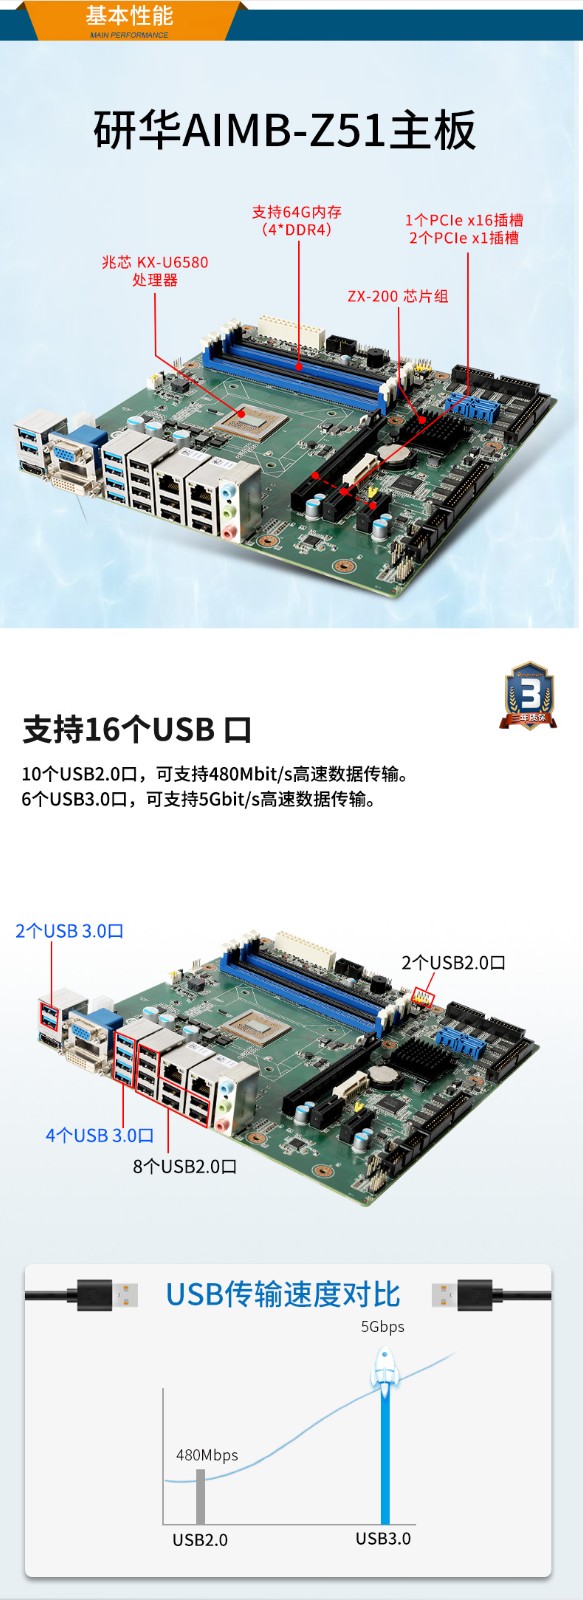 国产化工控机电脑,兆芯KX-U6580 CPU,DT-5206-Z51.jpg